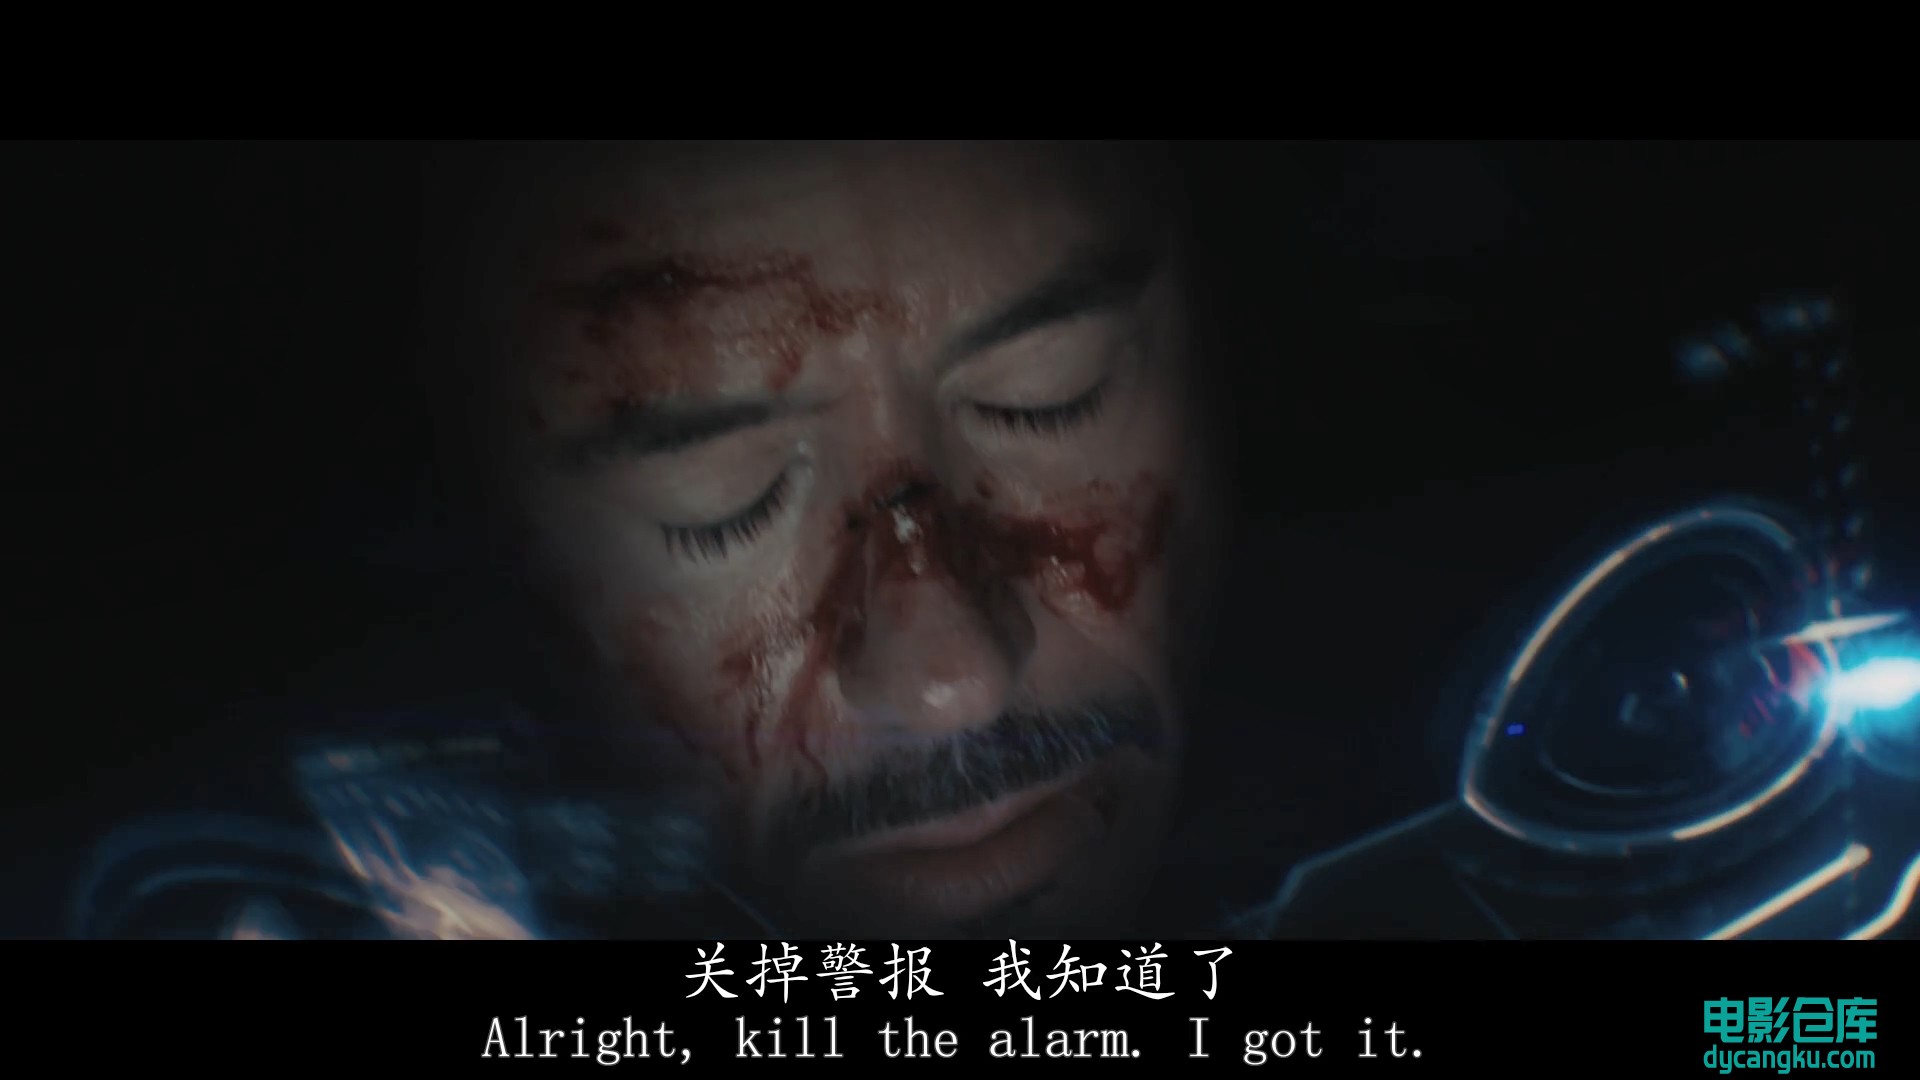 [电影仓库dycangku.com]钢铁侠3.Iron.Man.3.2013.BluRay.1080p.x264.DTS.AAC.国英双语.jpg